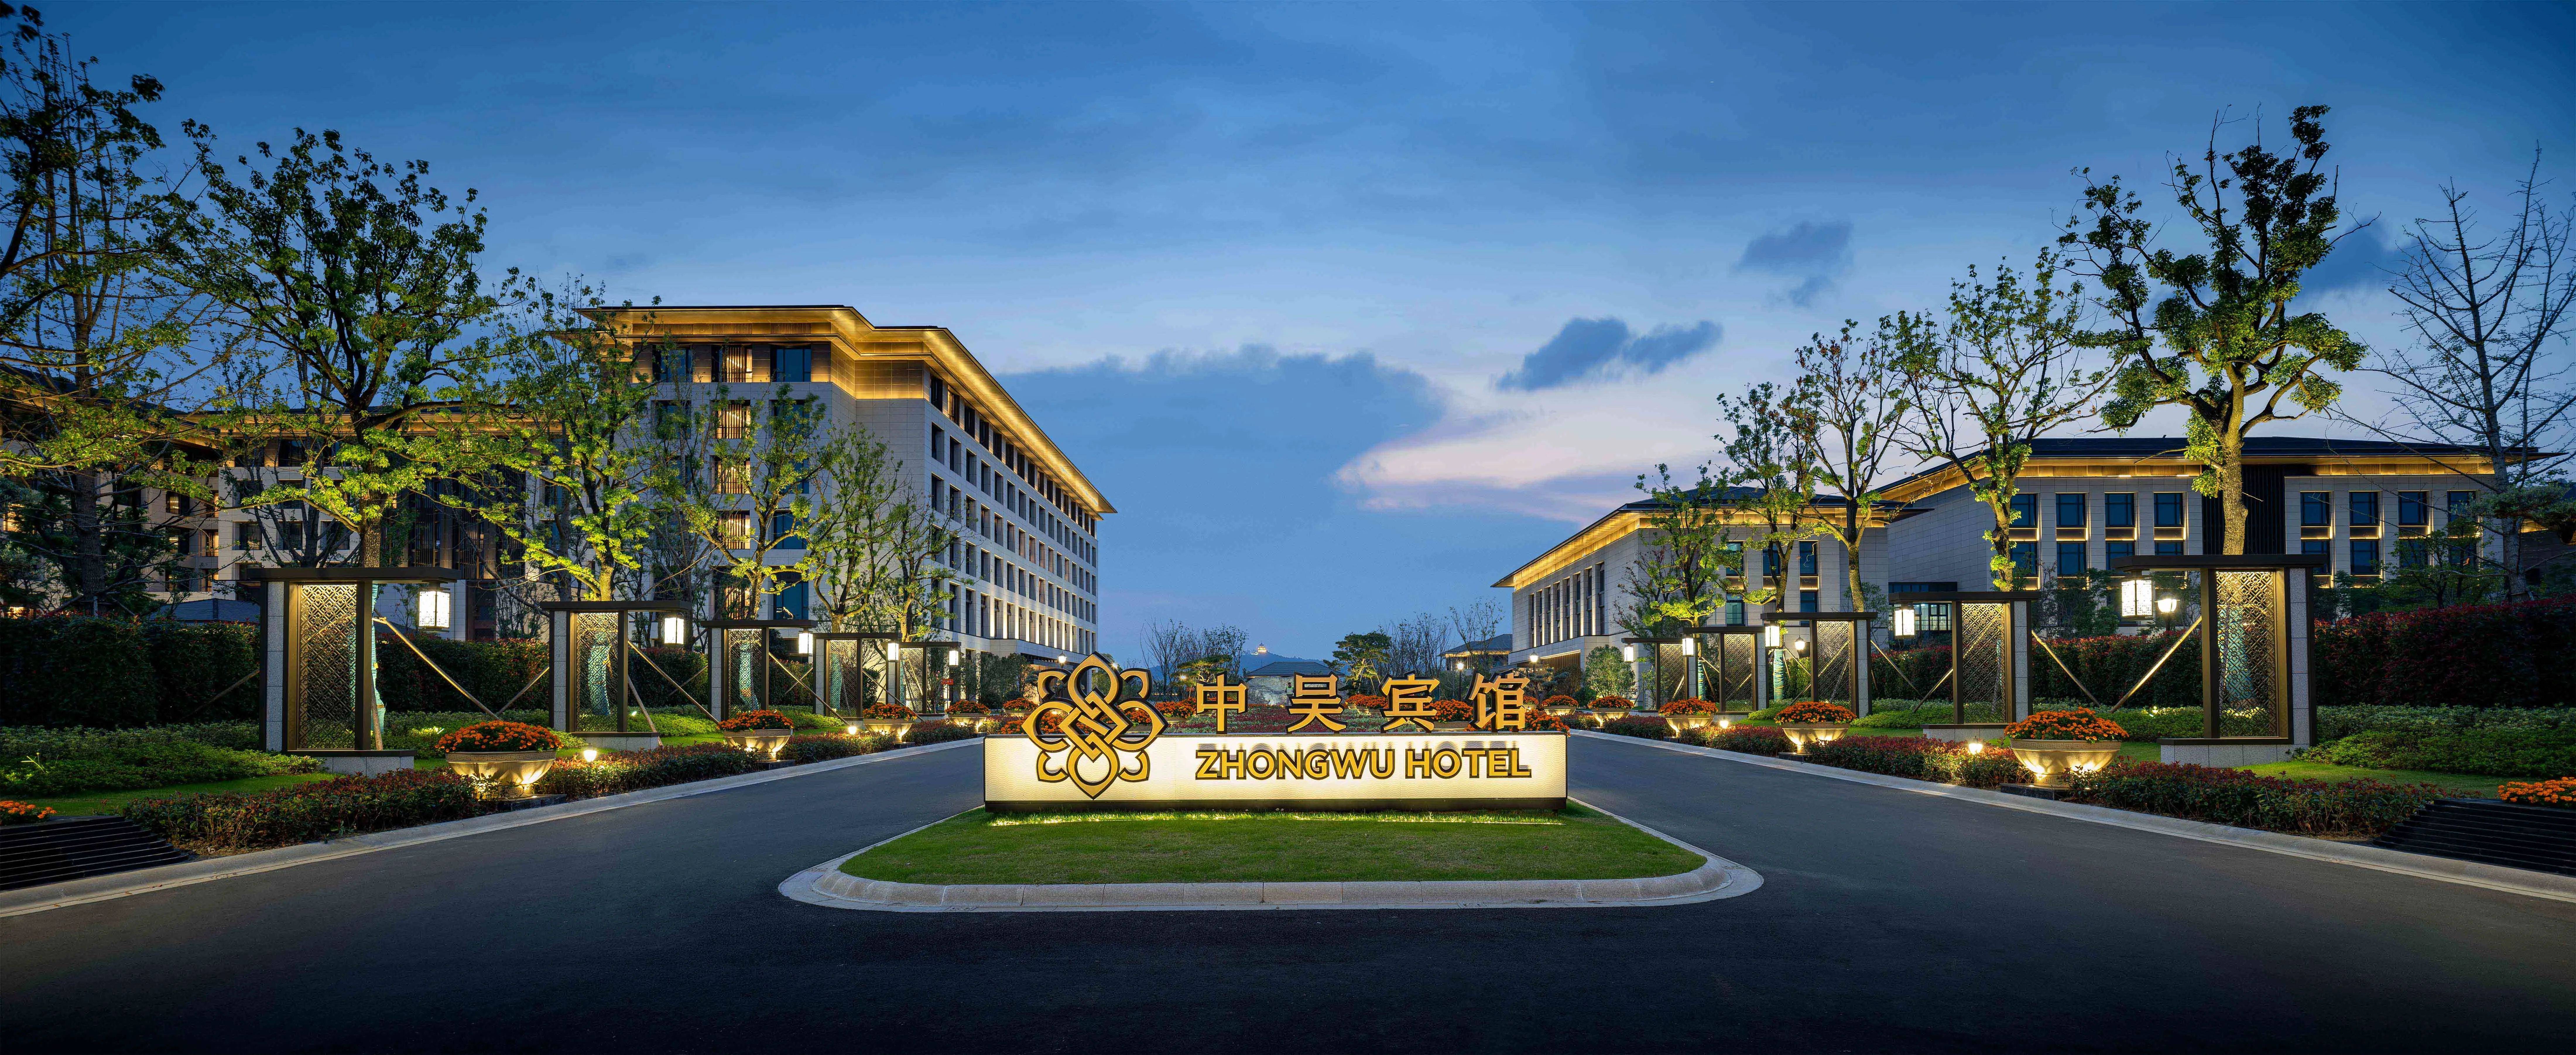 常州中吴宾馆荣获2022年度in旅行中国酒店旅游榜年度最佳度假酒店